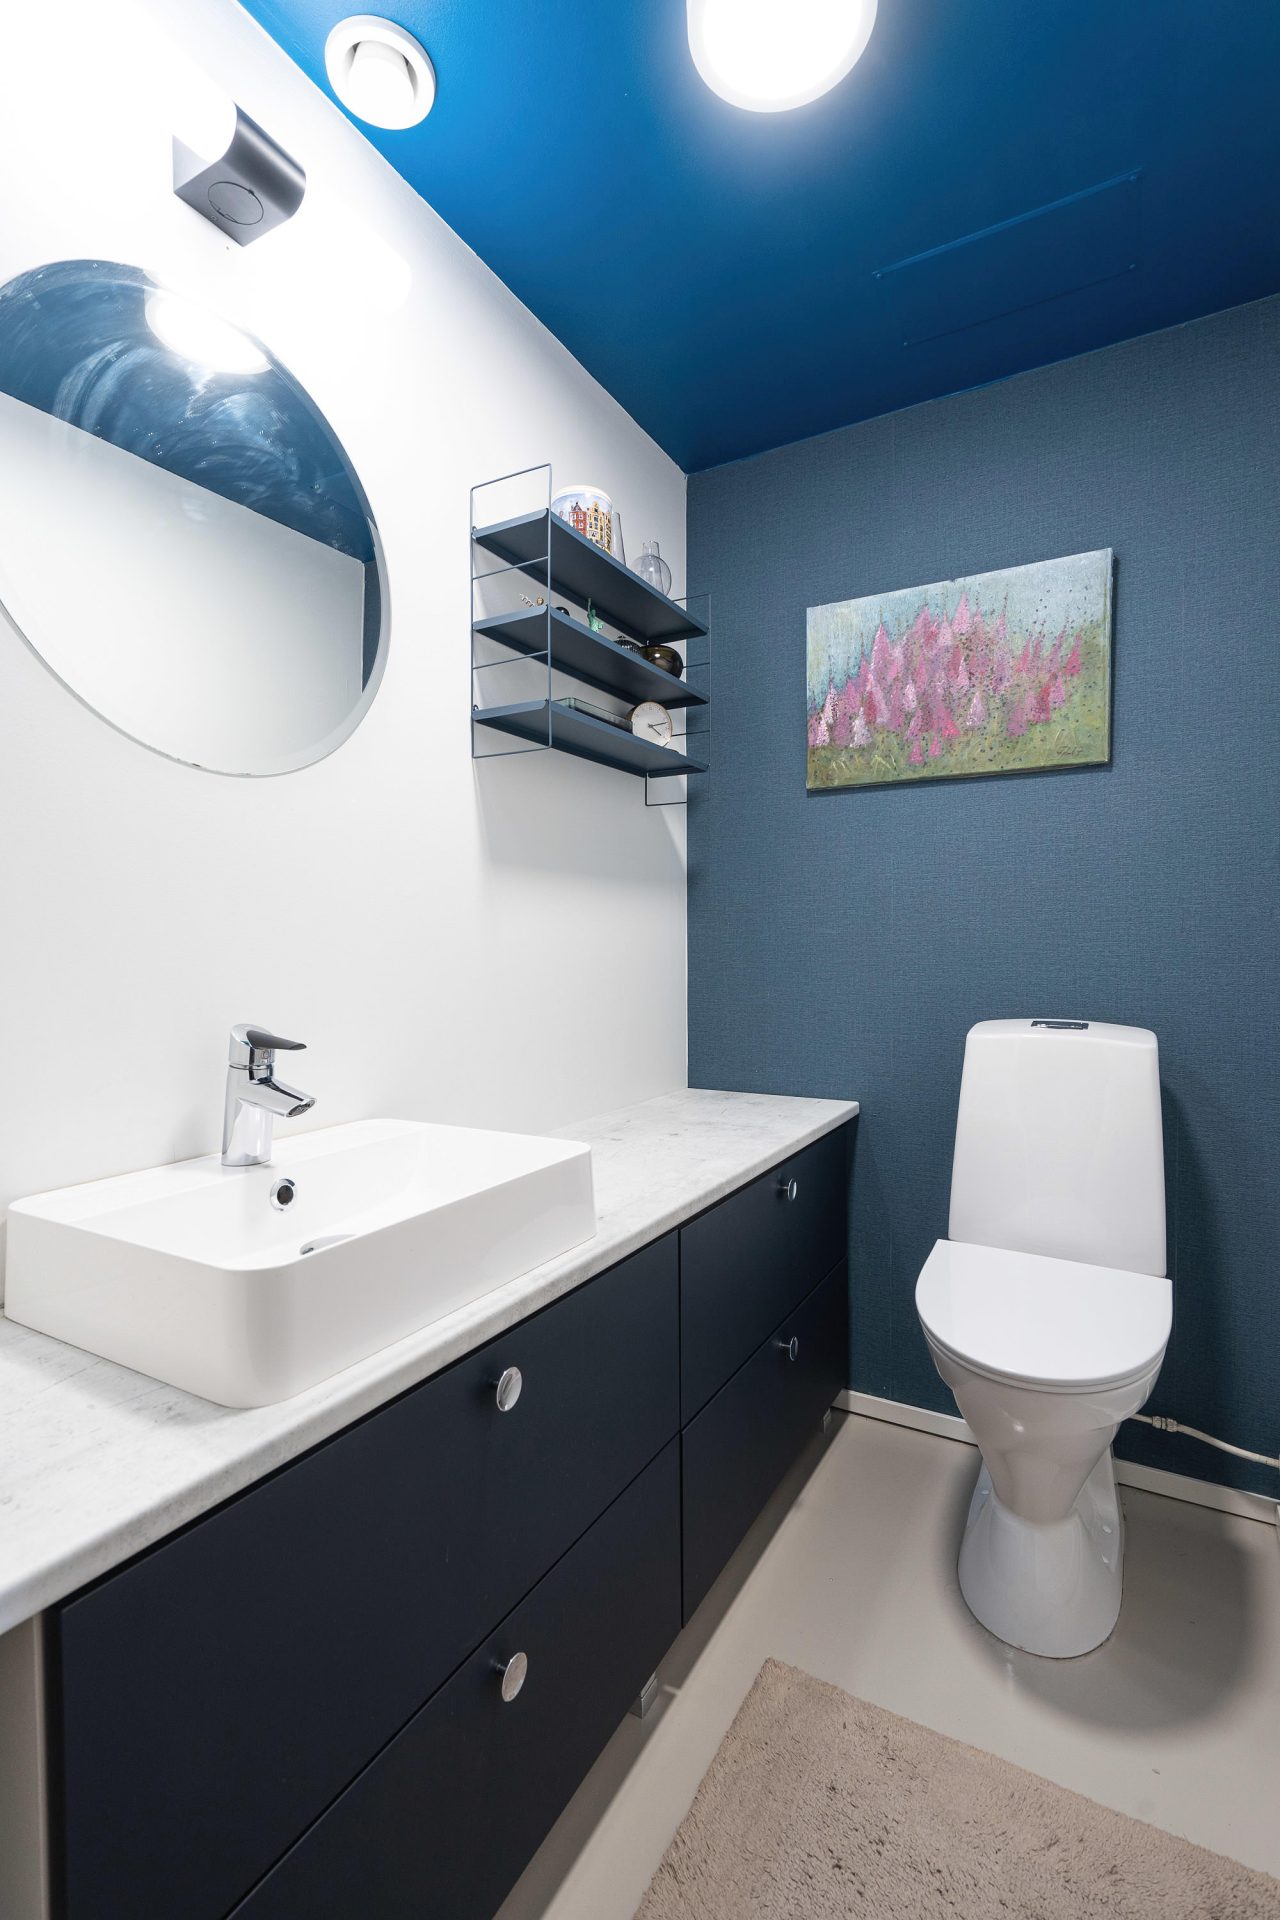 Tummansininen allaskaluste, vaalea laminaattitaso sekä malja-allas luovat tämän wc-tilan kalustekokonaisuuden.